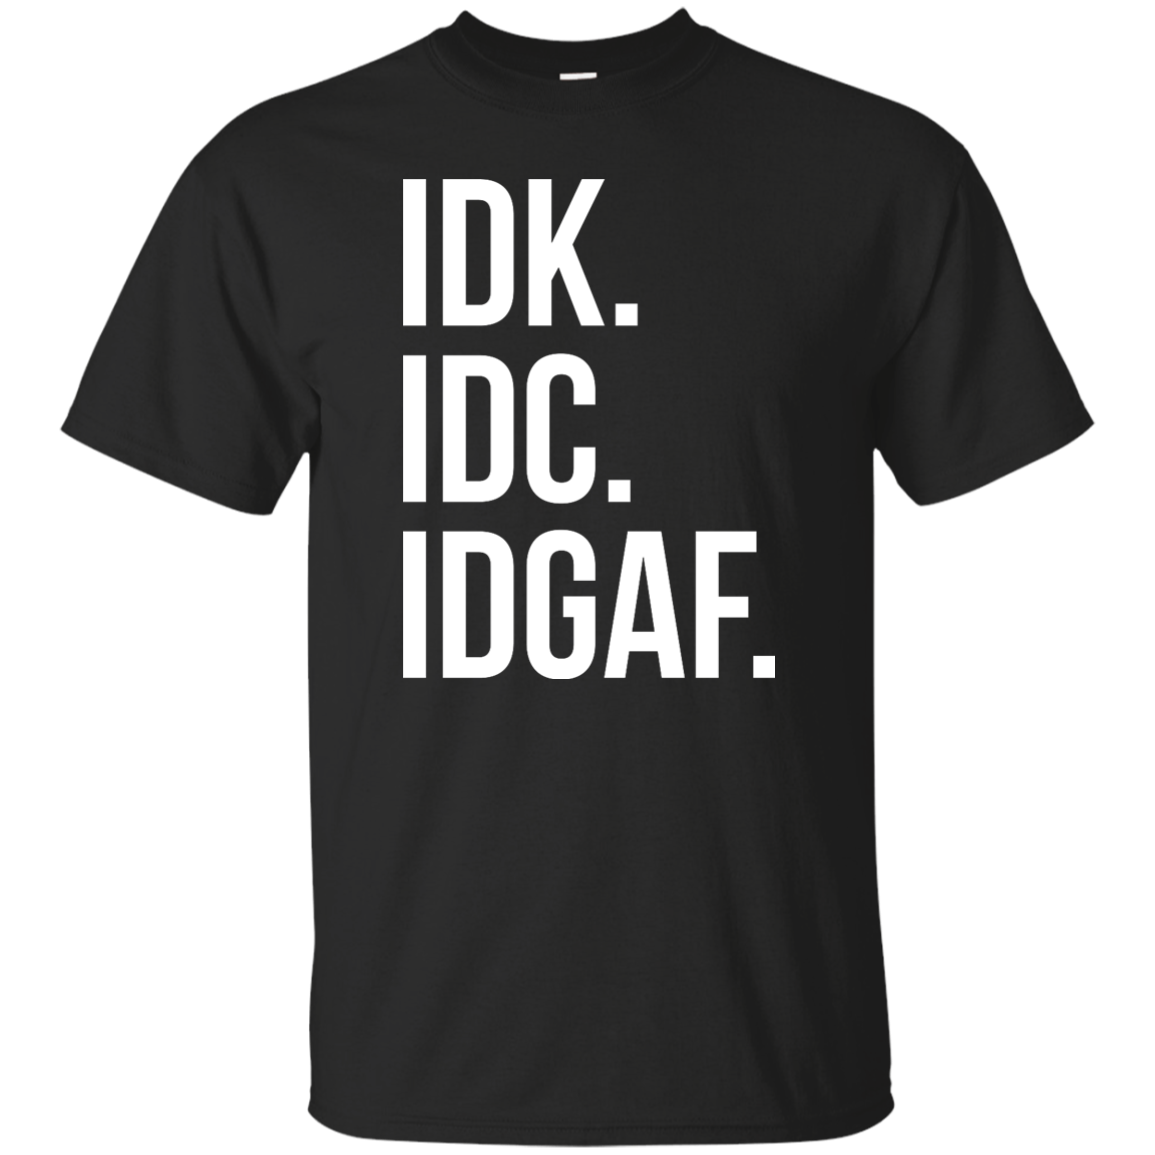 IDK IDC IDGAF shirt, sweater, racerback